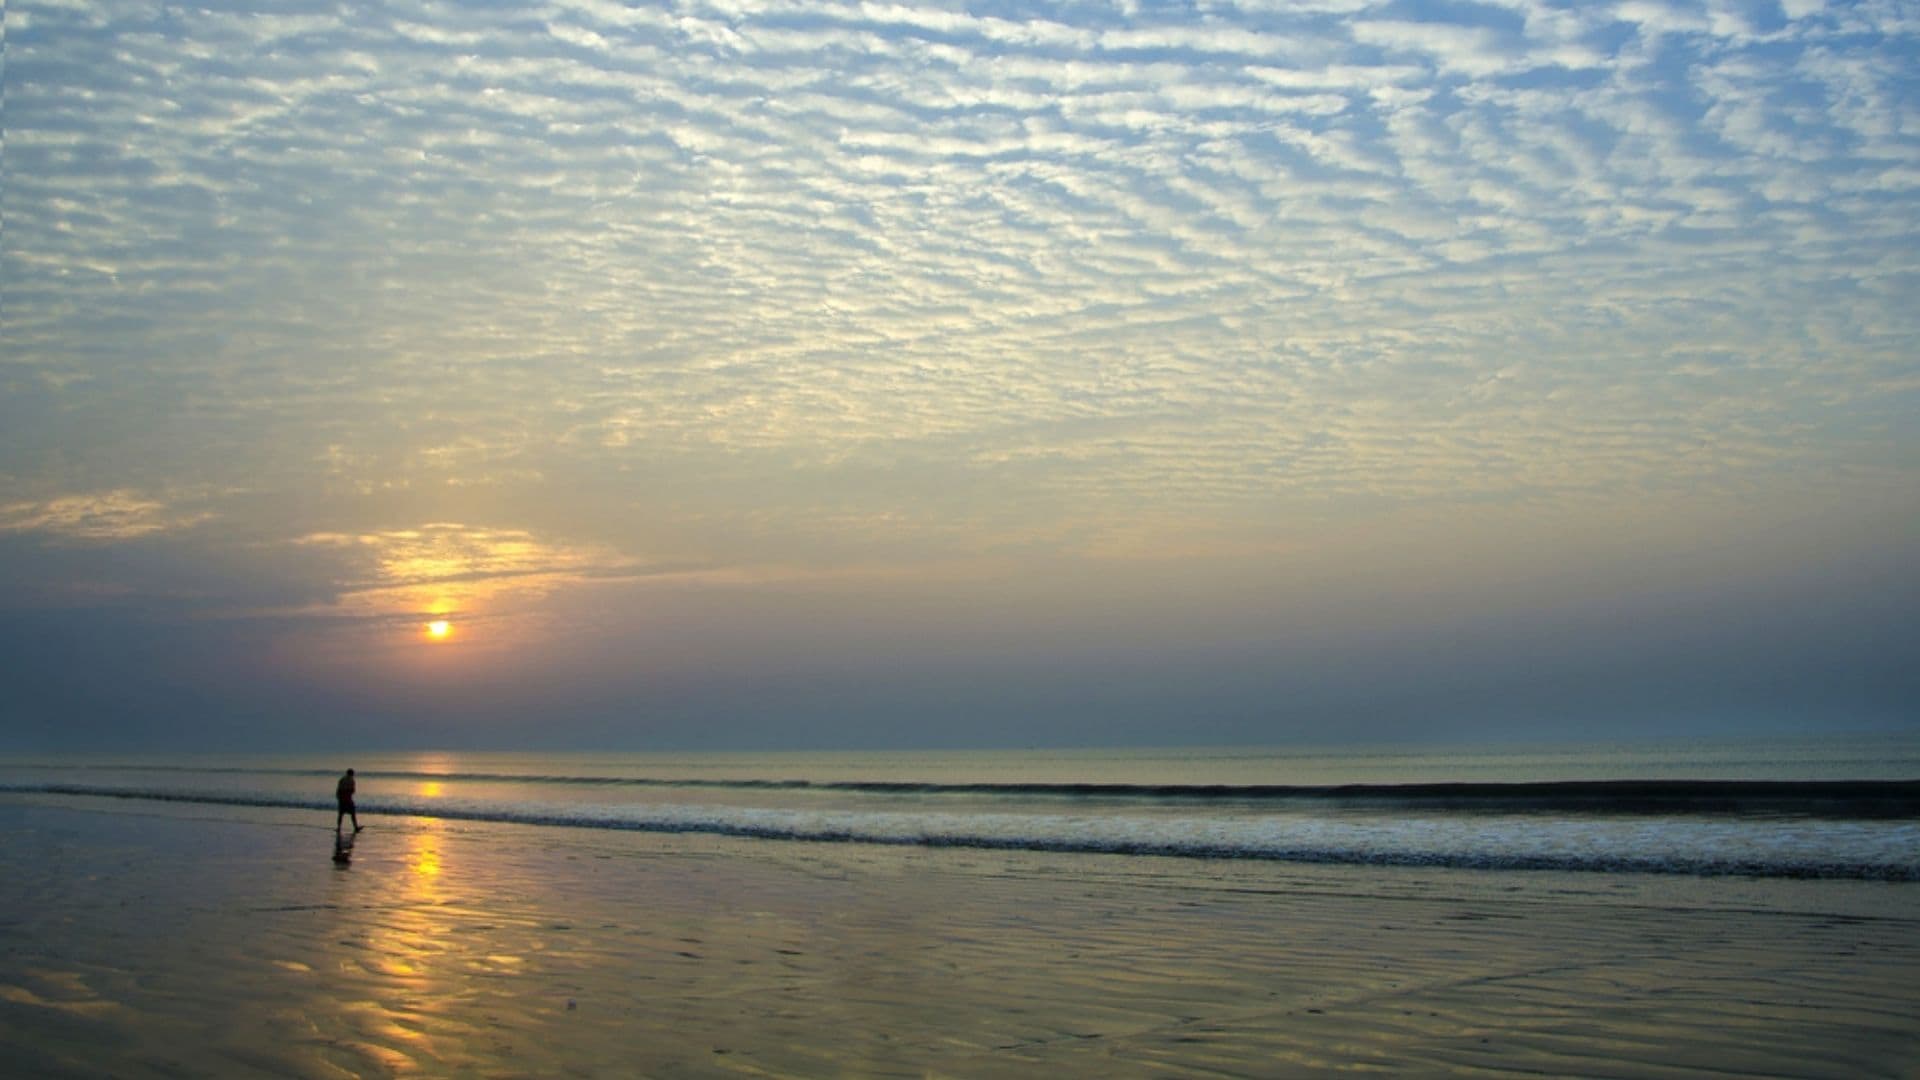 Digha Beach, West Bengal